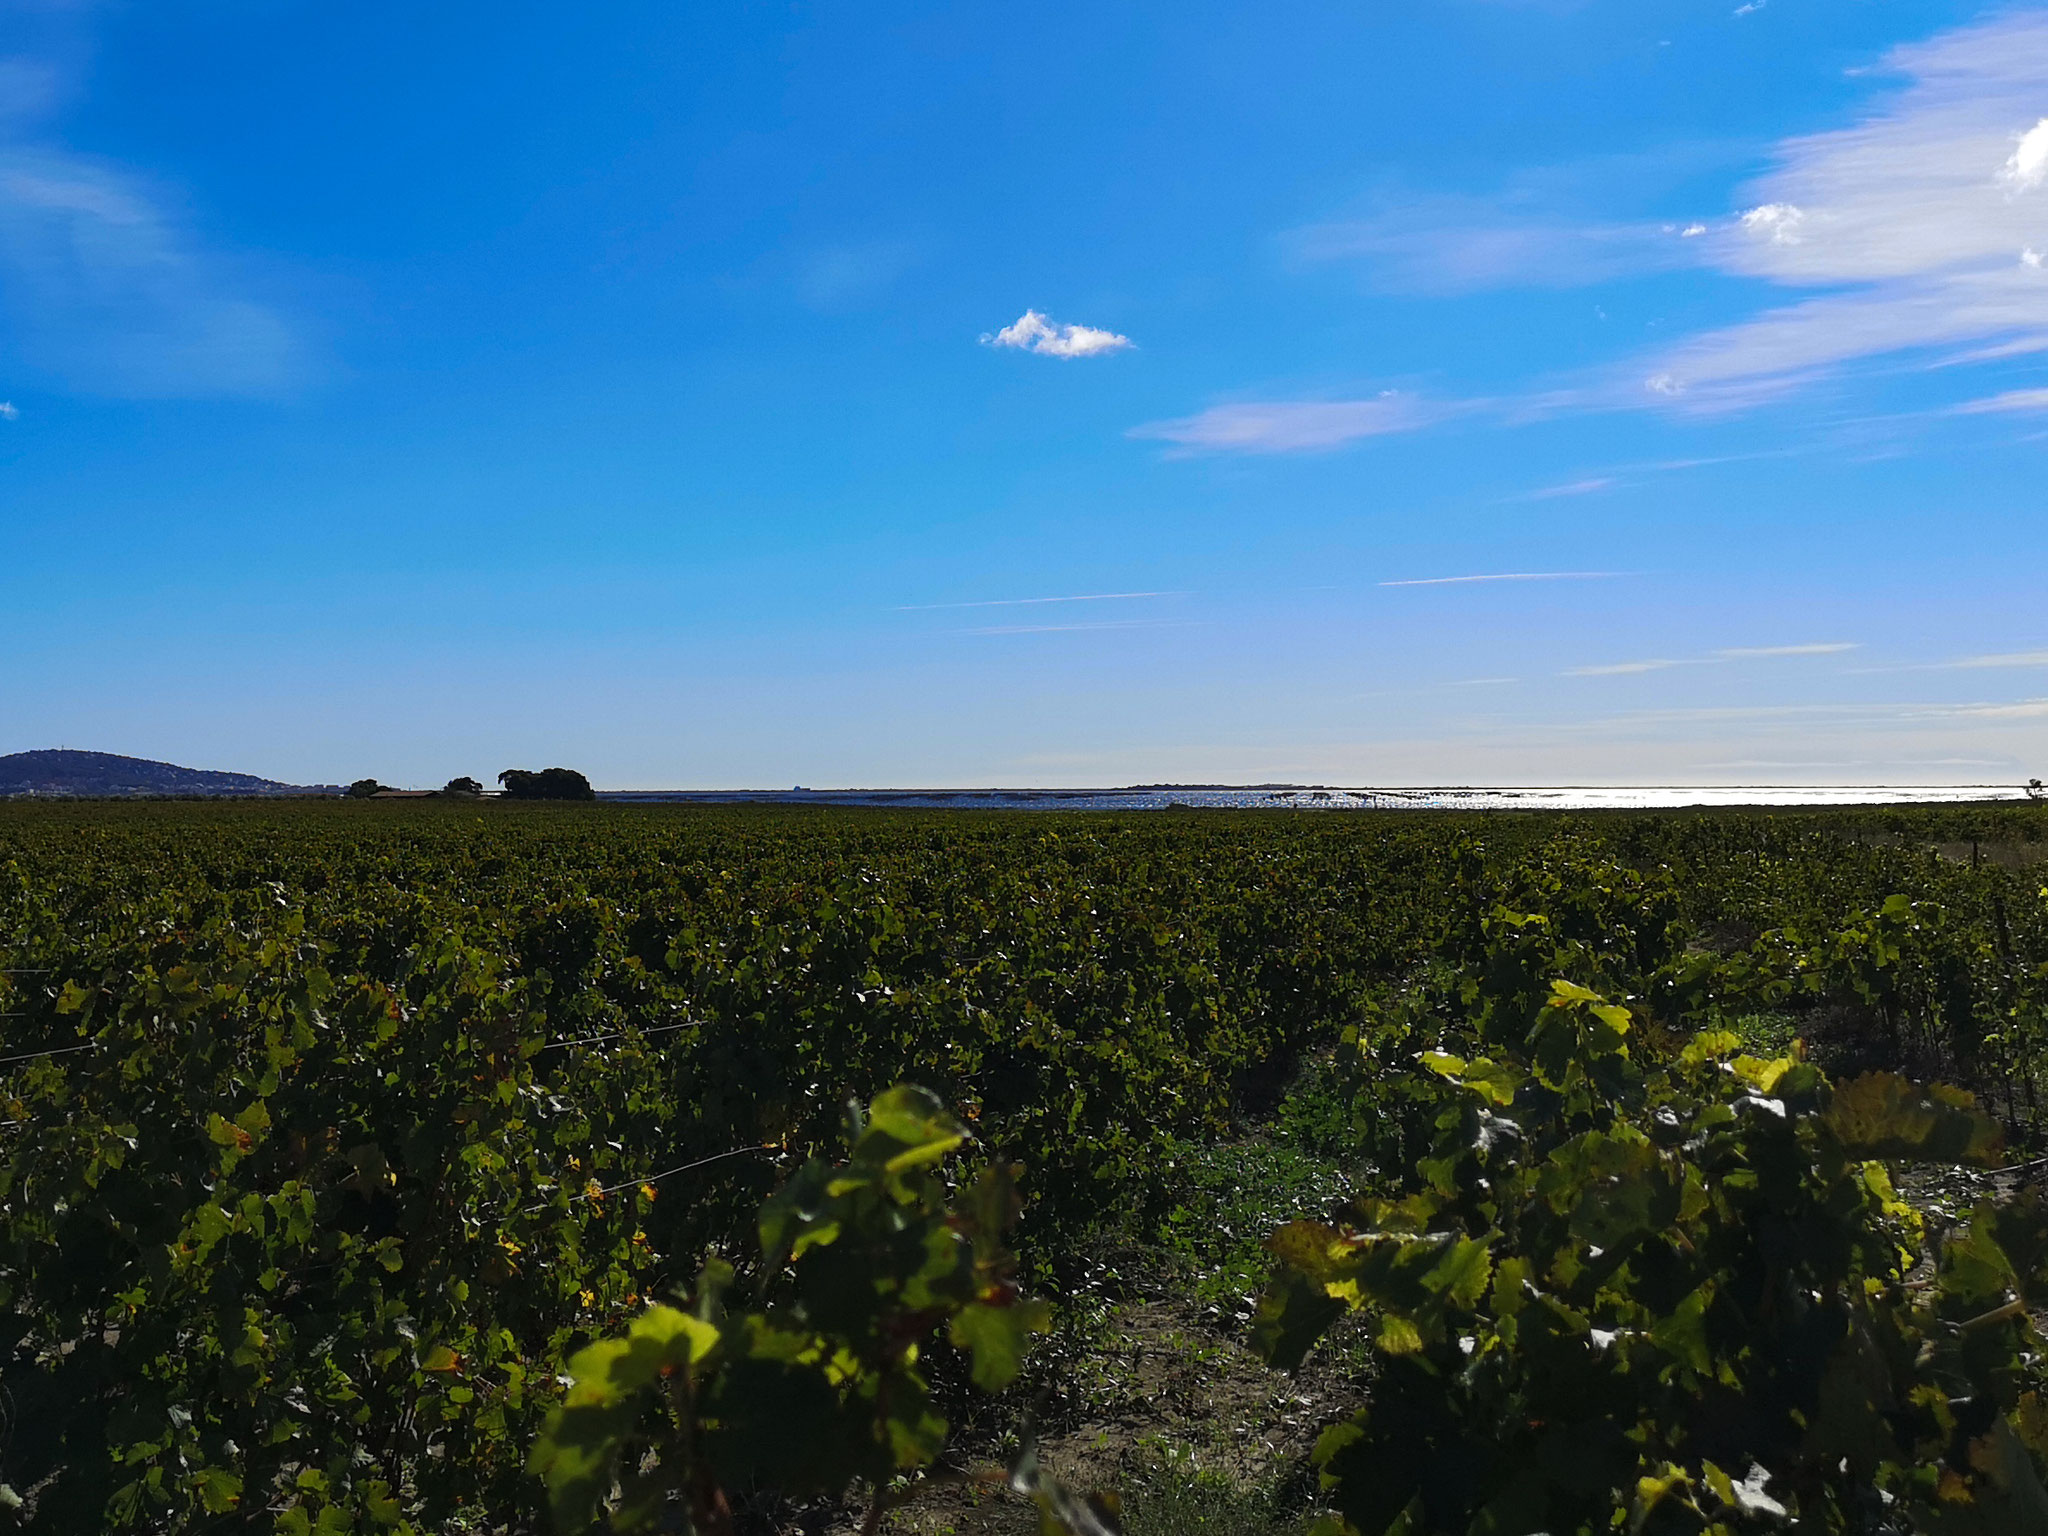 Wijngaard, uitzicht op de oesterkwekerijen